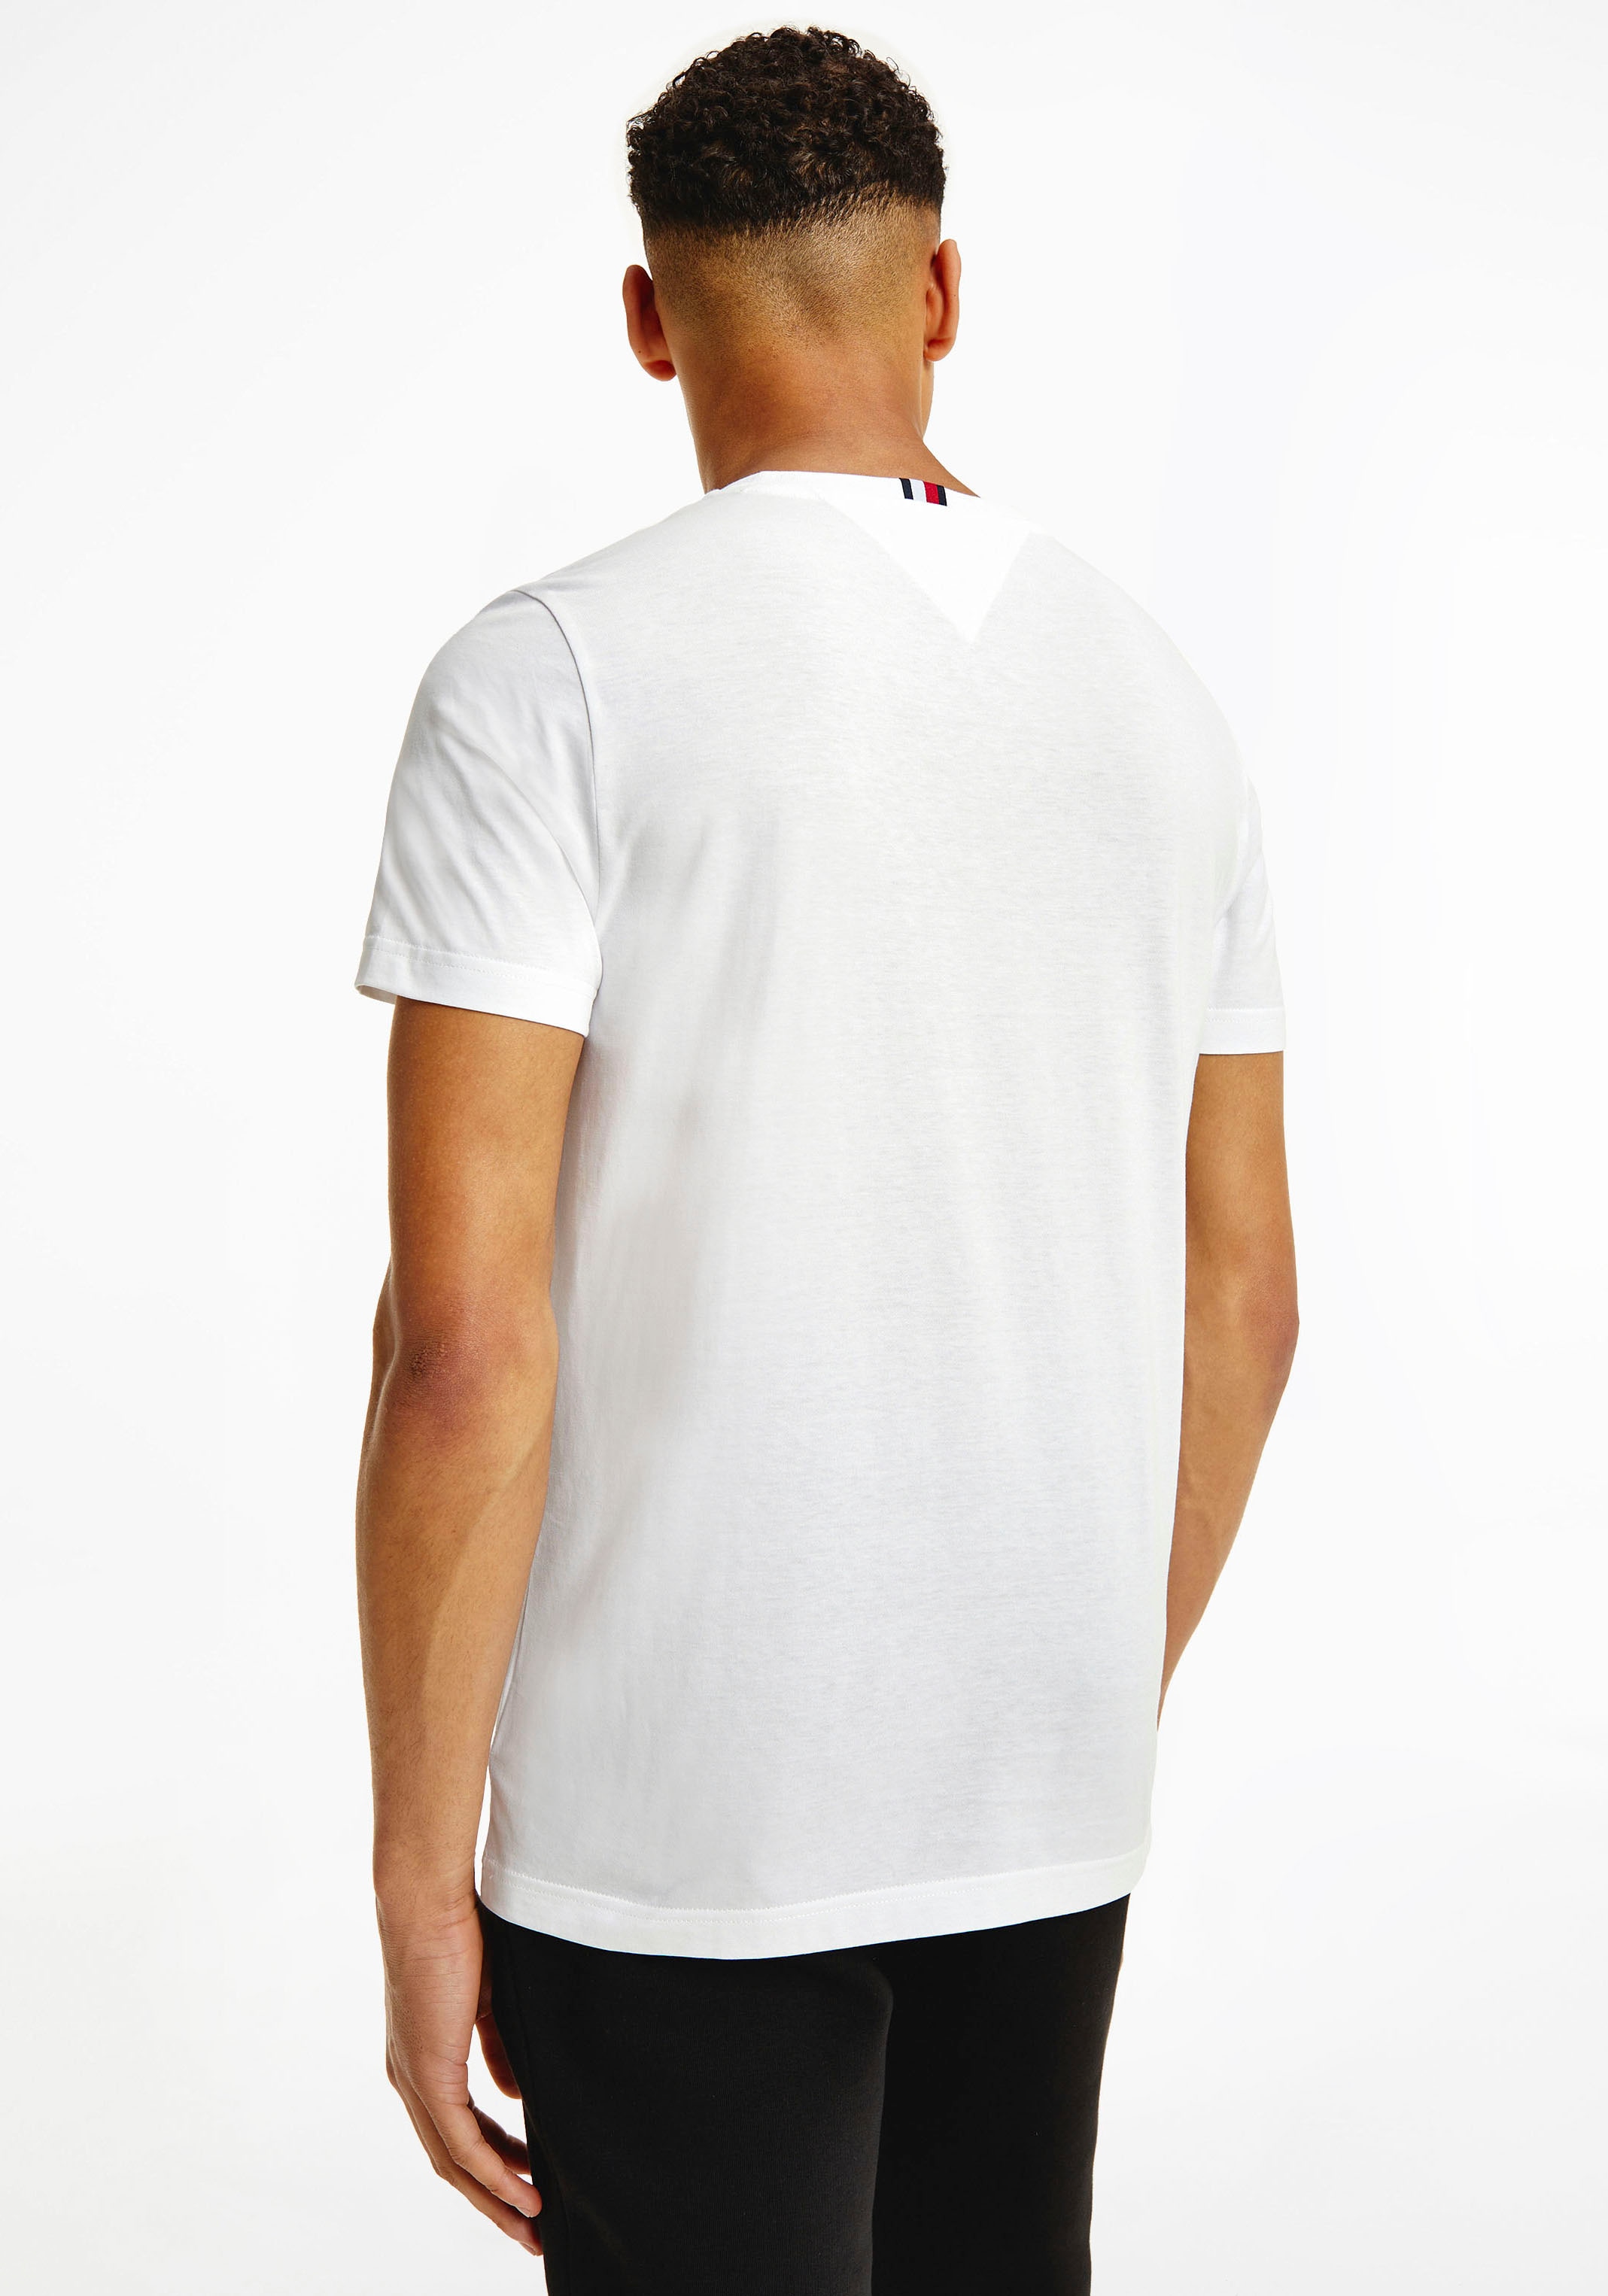 Shirts Mindestbestellwert ohne shoppen versandkostenfrei - ➤